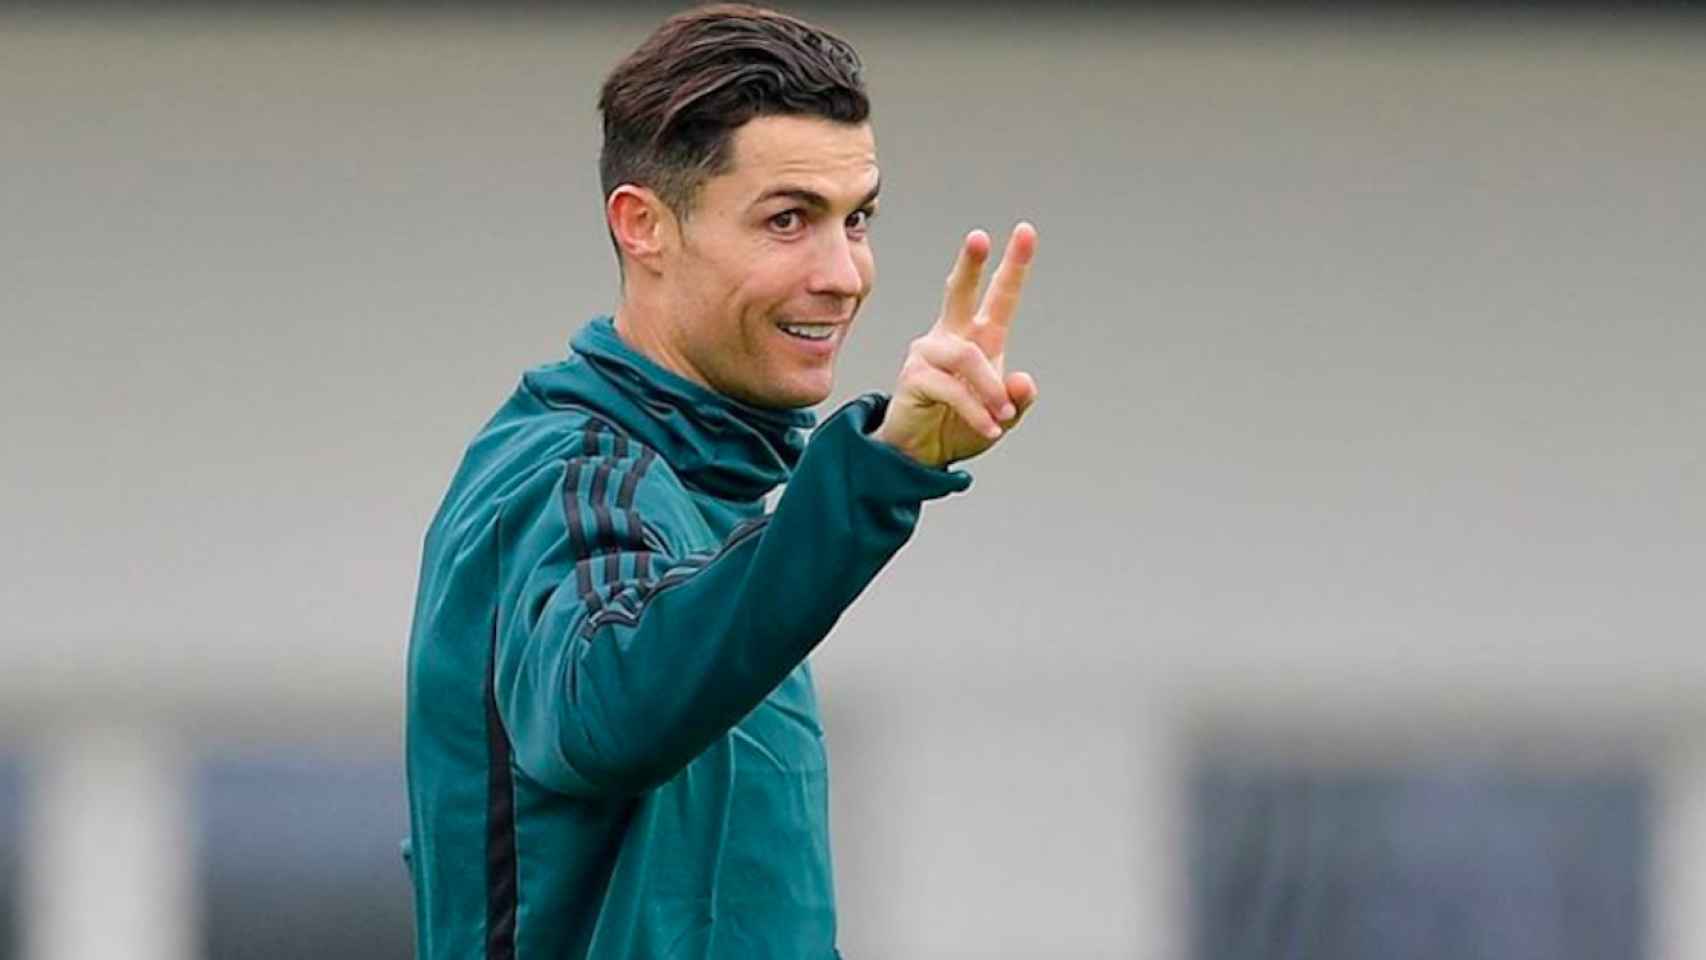 Cristiano Ronaldo se salta el confinamiento para irse de paseo / INSTAGRAM